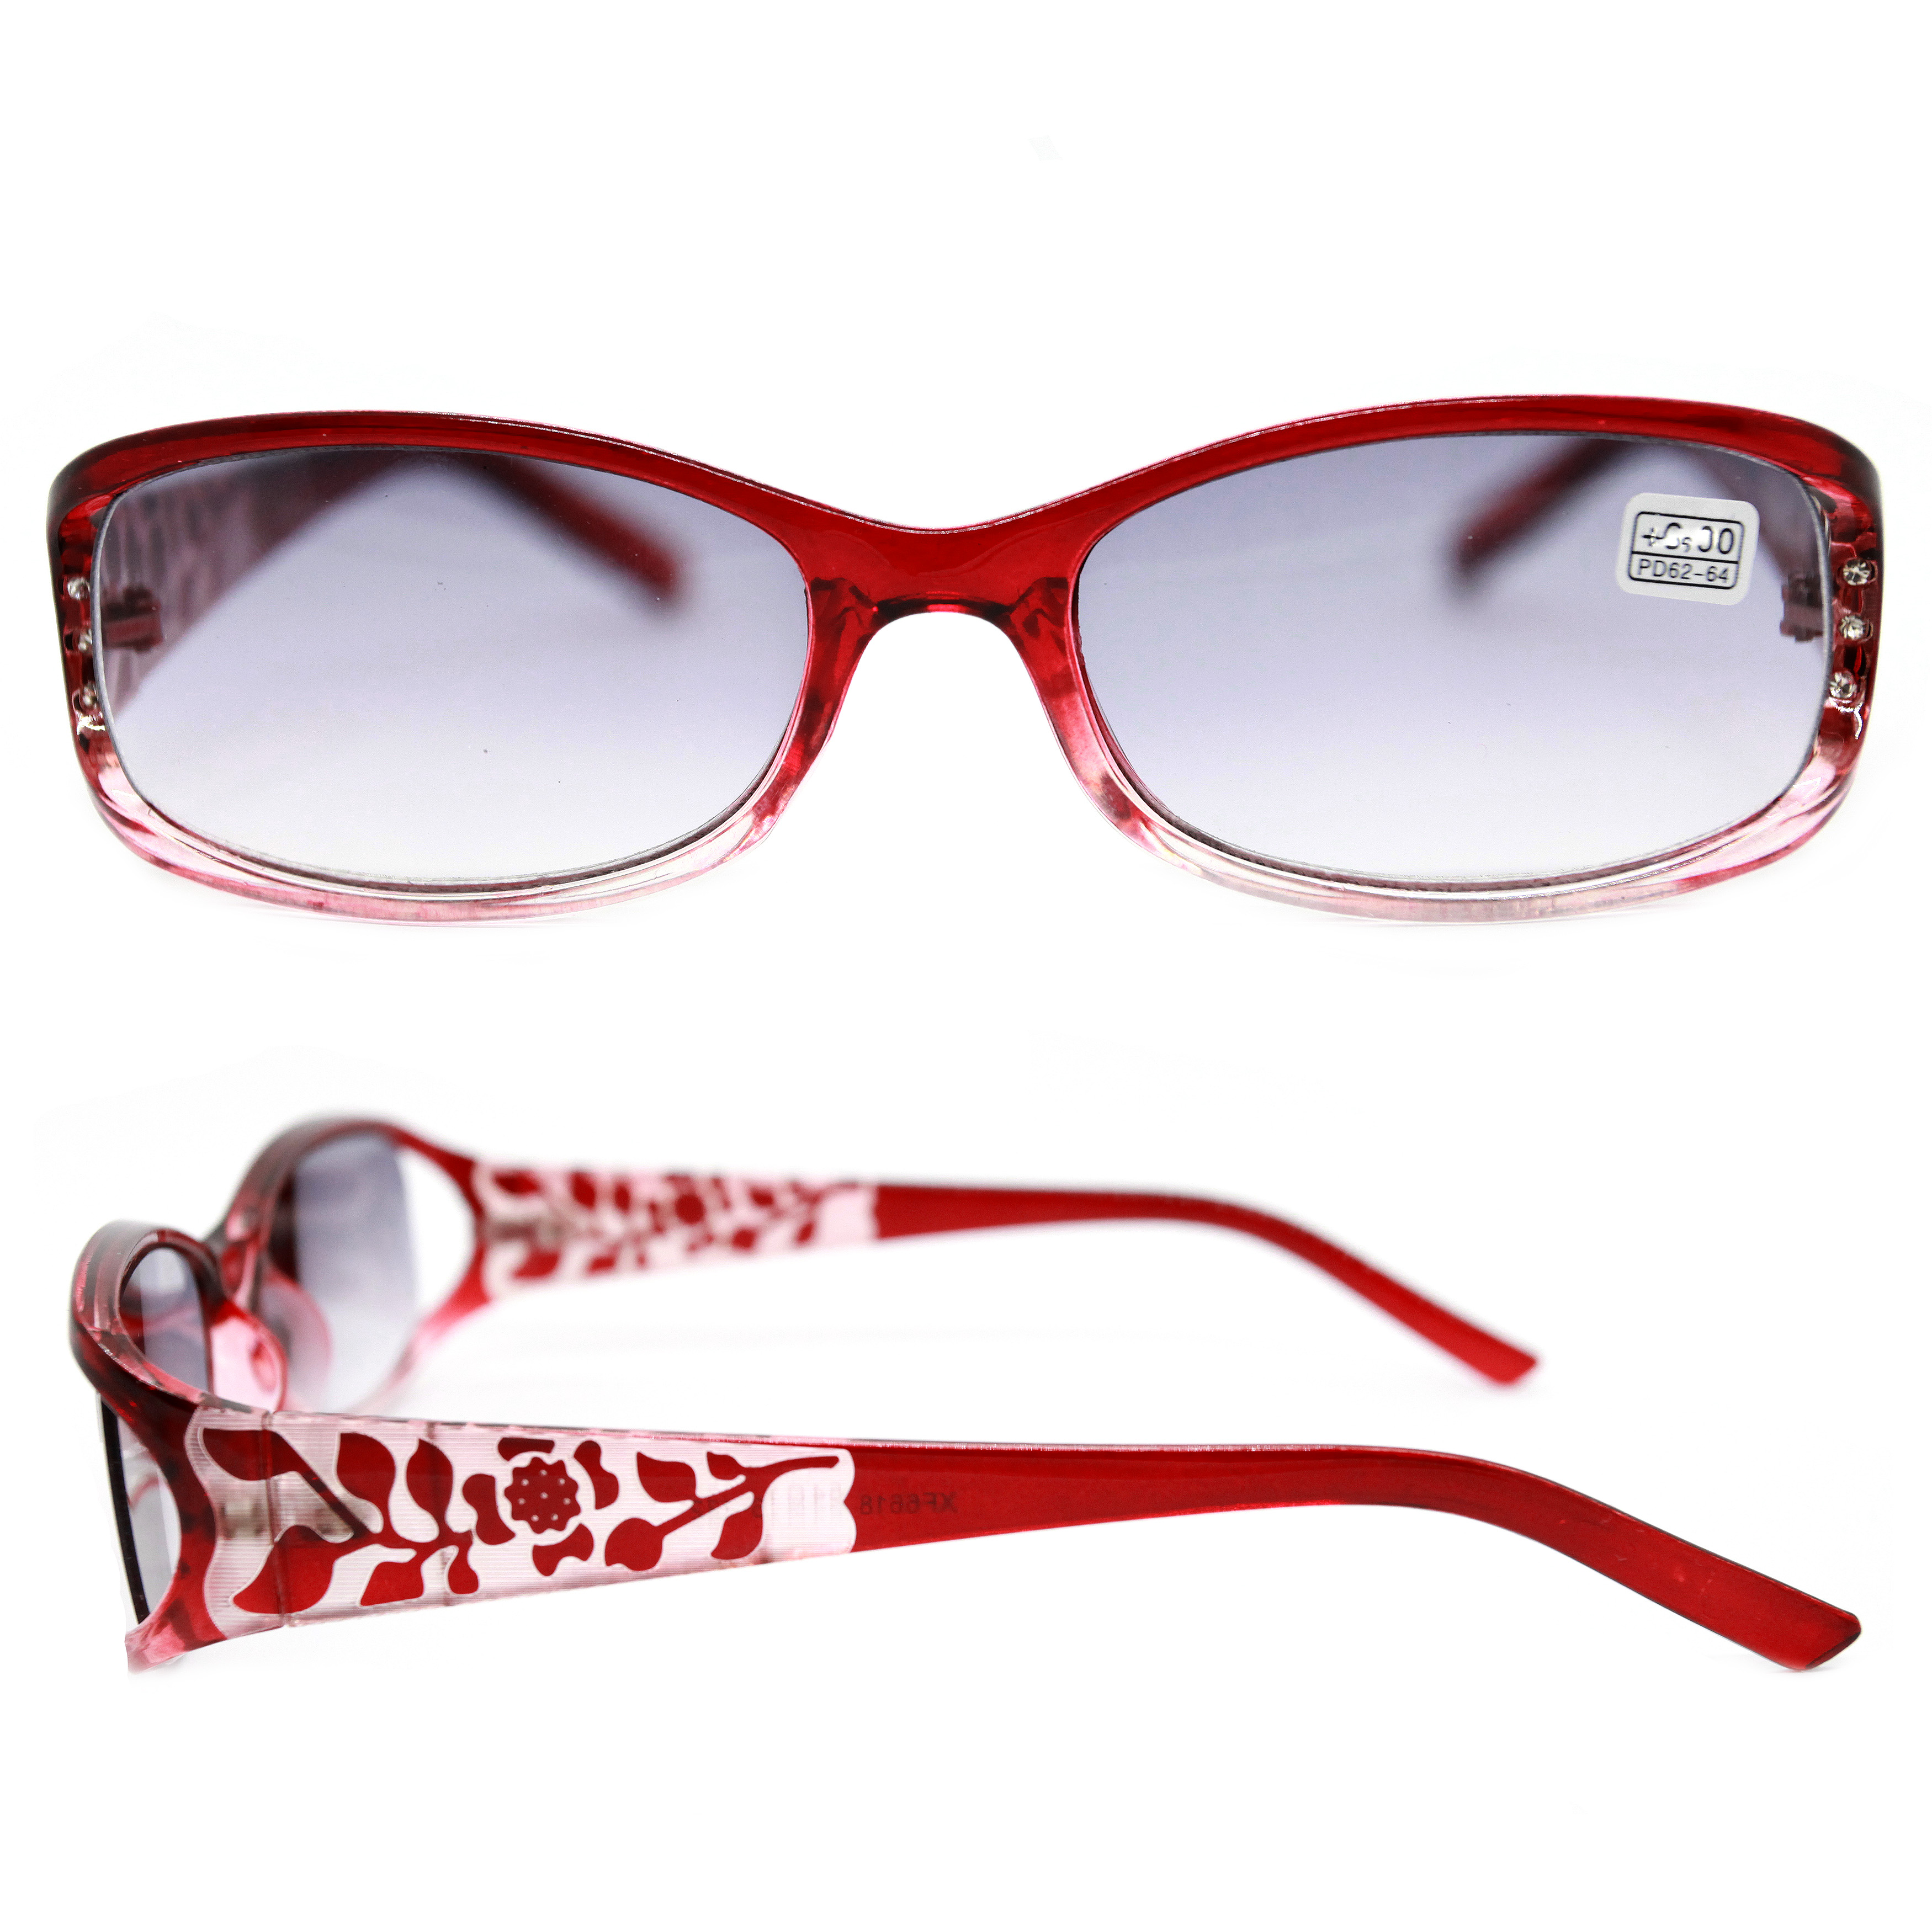 Готовые очки ВОСТОК 6614 +4,00, тонированные, бордовый, РЦ 62-64